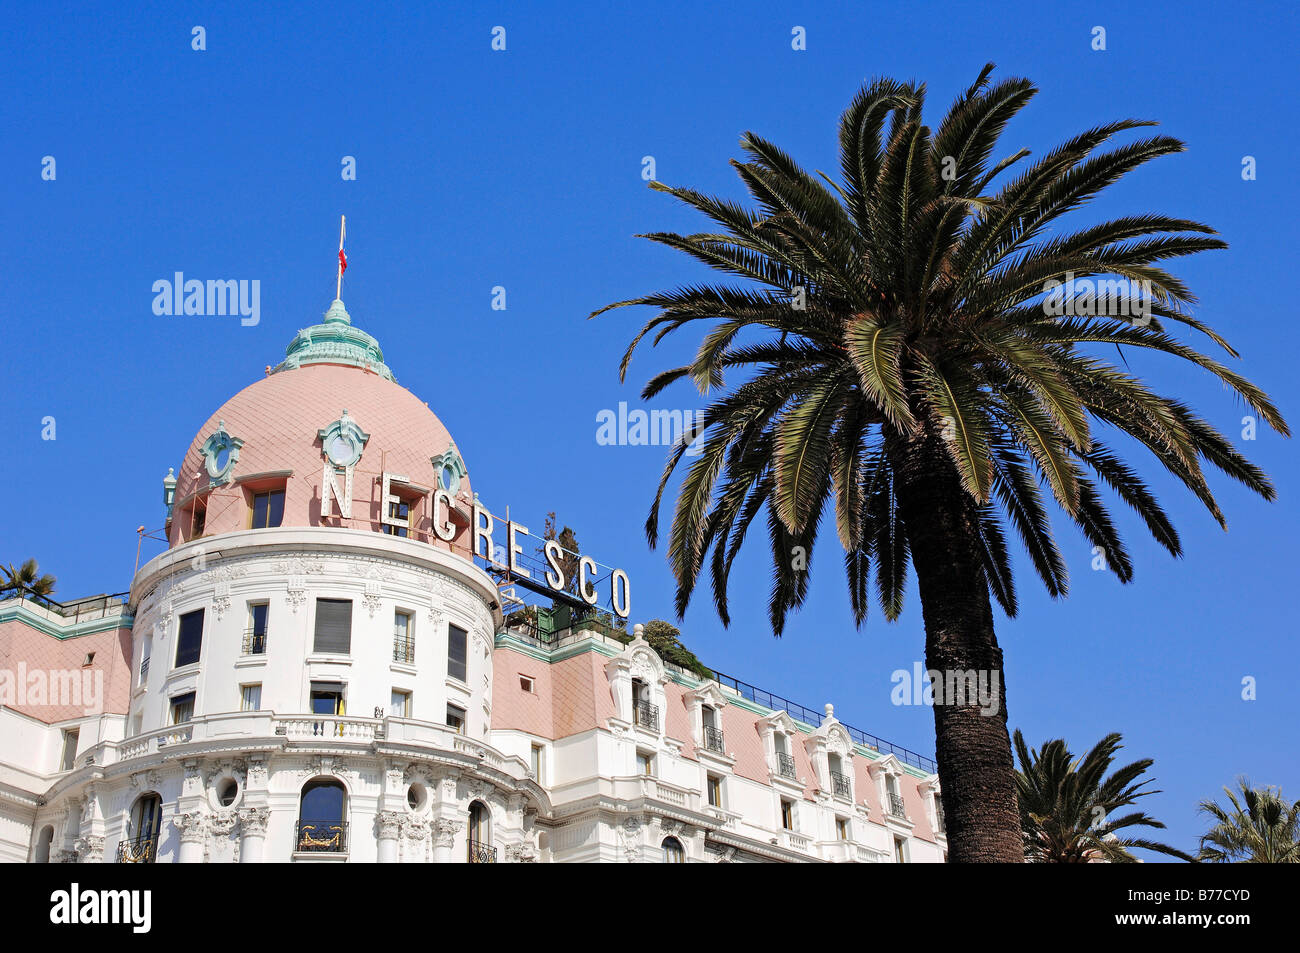 L'hôtel Negresco et palm, Nice, Alpes-Maritimes, Provence-Alpes-Côte d'Azur, le sud de la France, France, Europe Banque D'Images